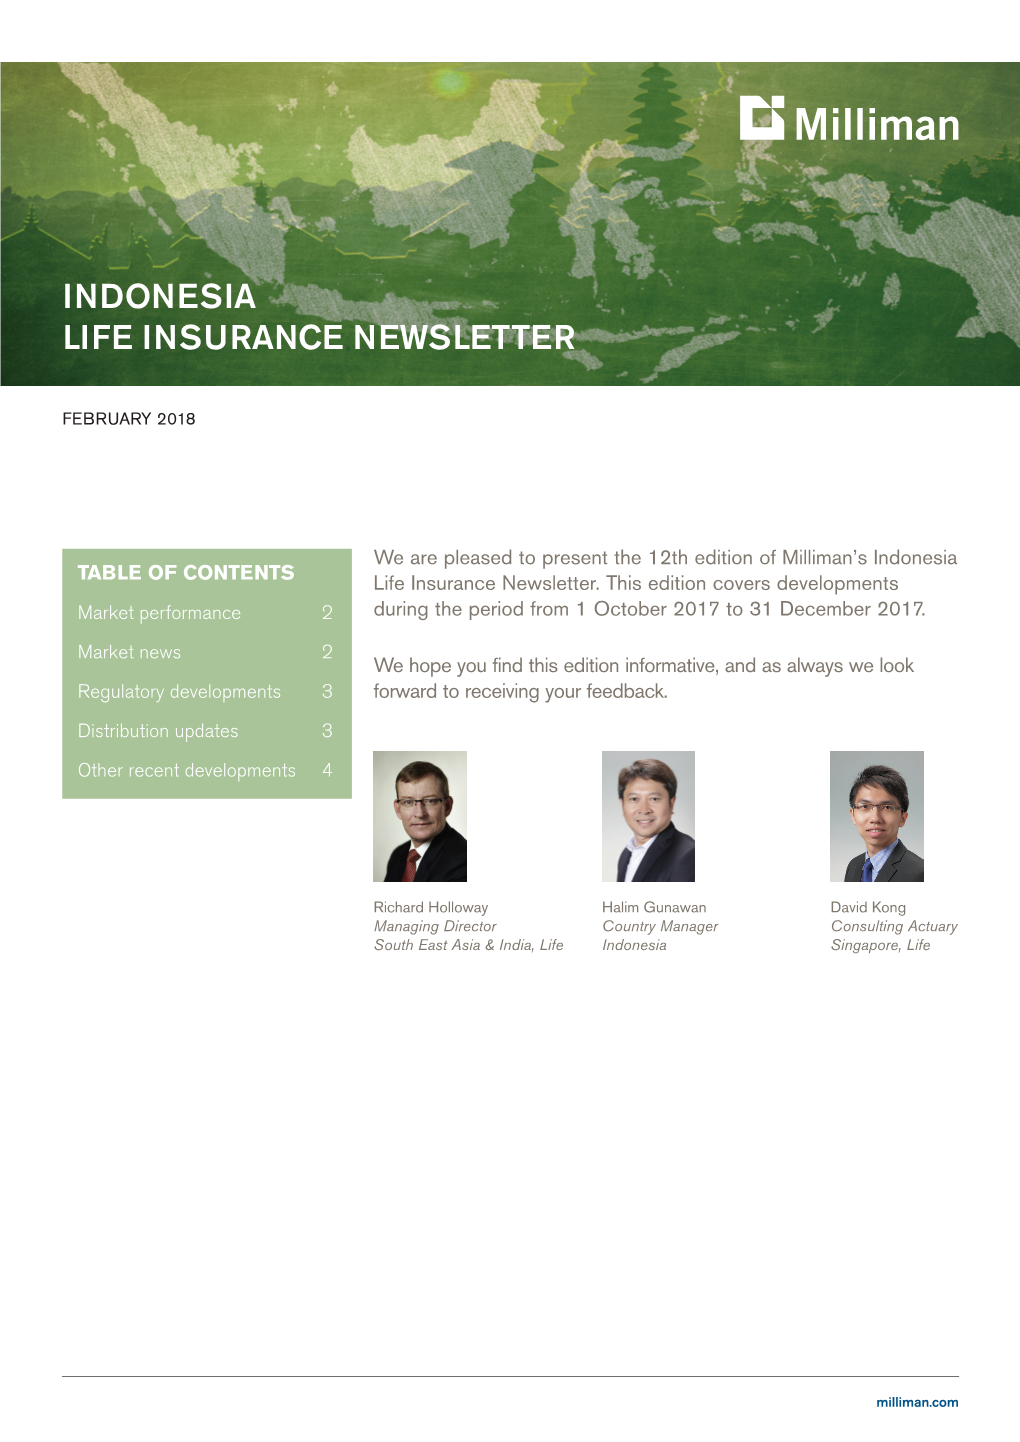 Indonesia Life Insurance Newsletter, February 2017